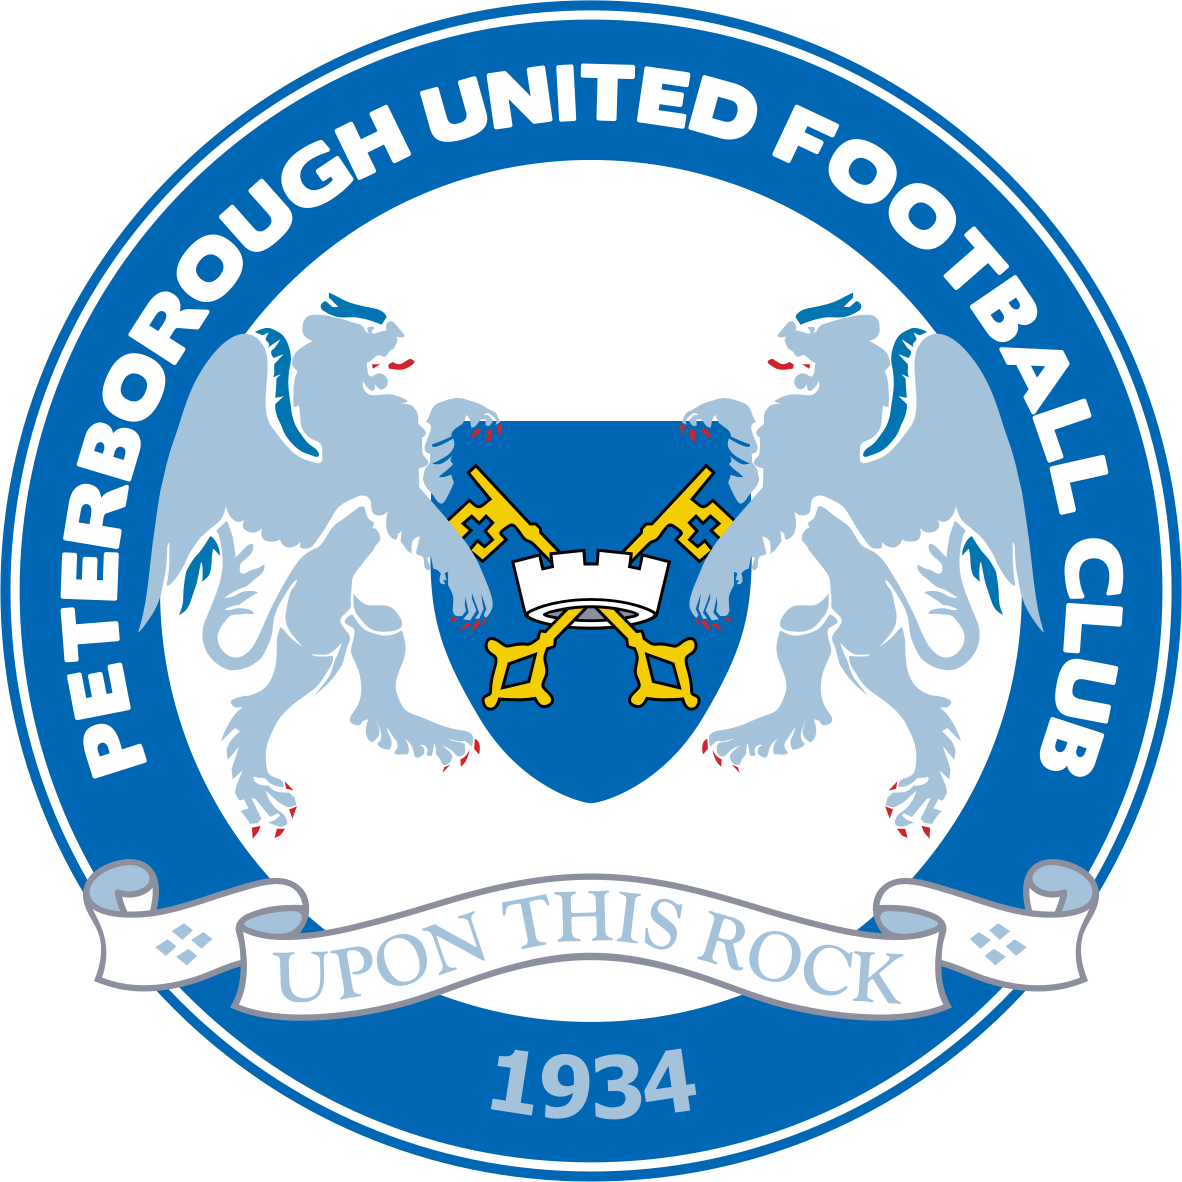 Peterborough Utd